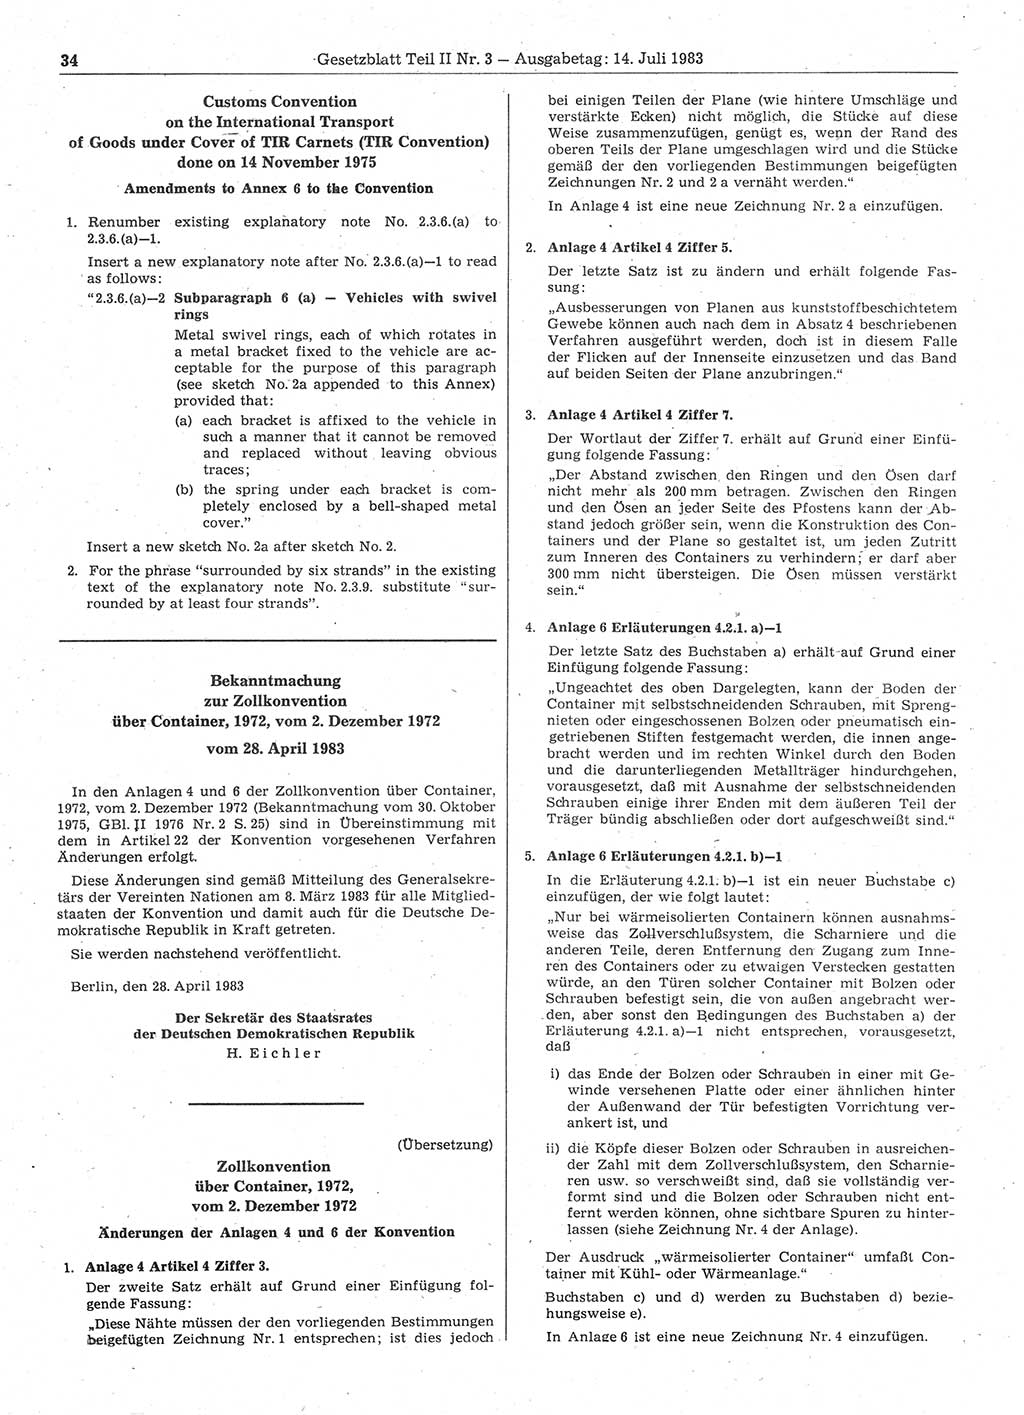 Gesetzblatt (GBl.) der Deutschen Demokratischen Republik (DDR) Teil ⅠⅠ 1983, Seite 34 (GBl. DDR ⅠⅠ 1983, S. 34)